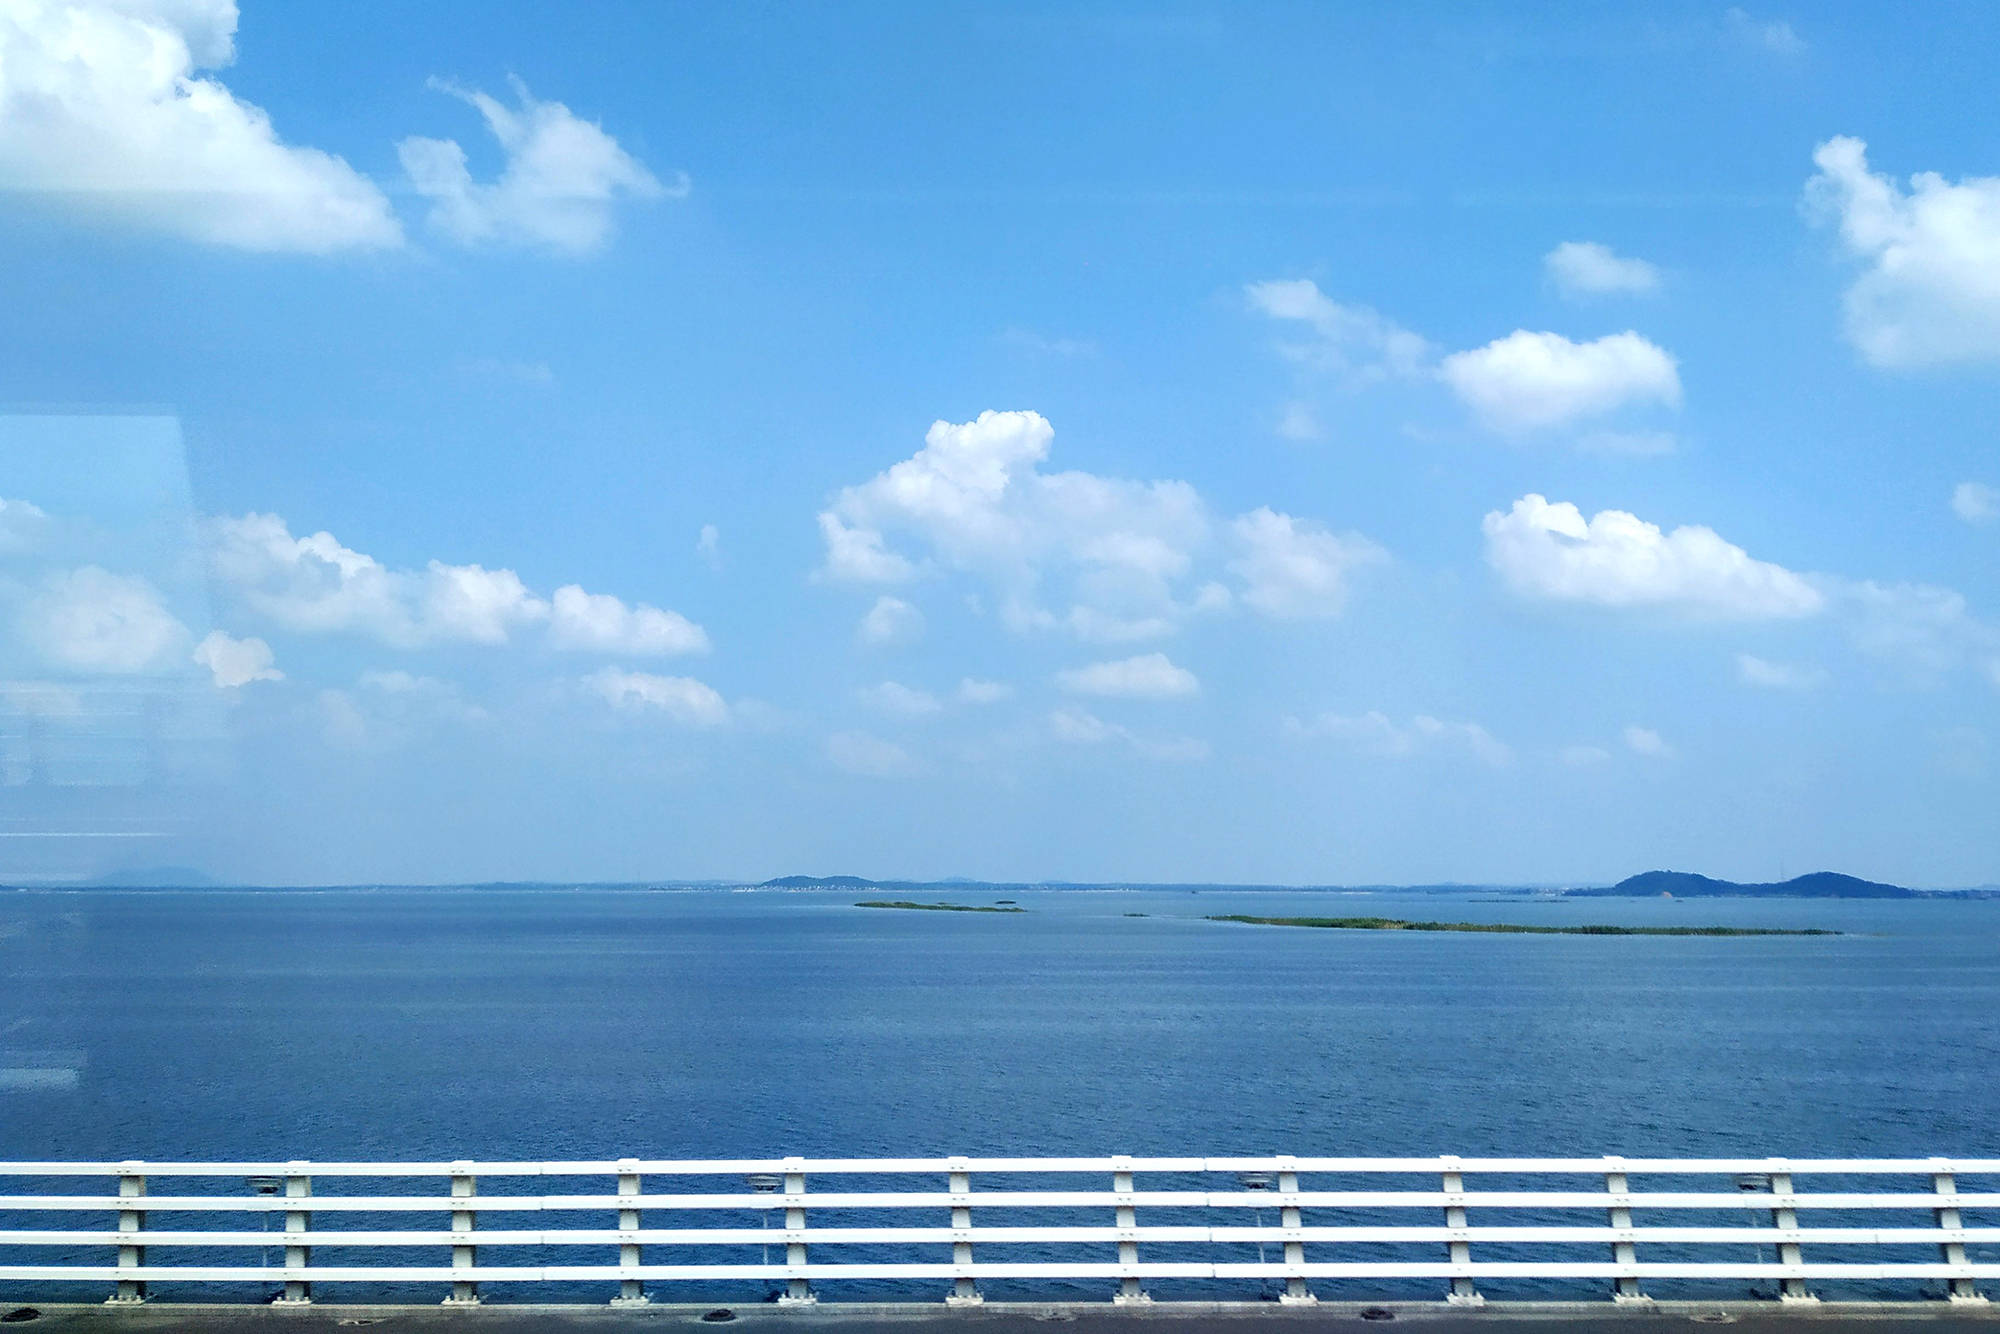 原创南京也有"天空之镜",就藏在石臼湖,在地铁上就可以观赏美景